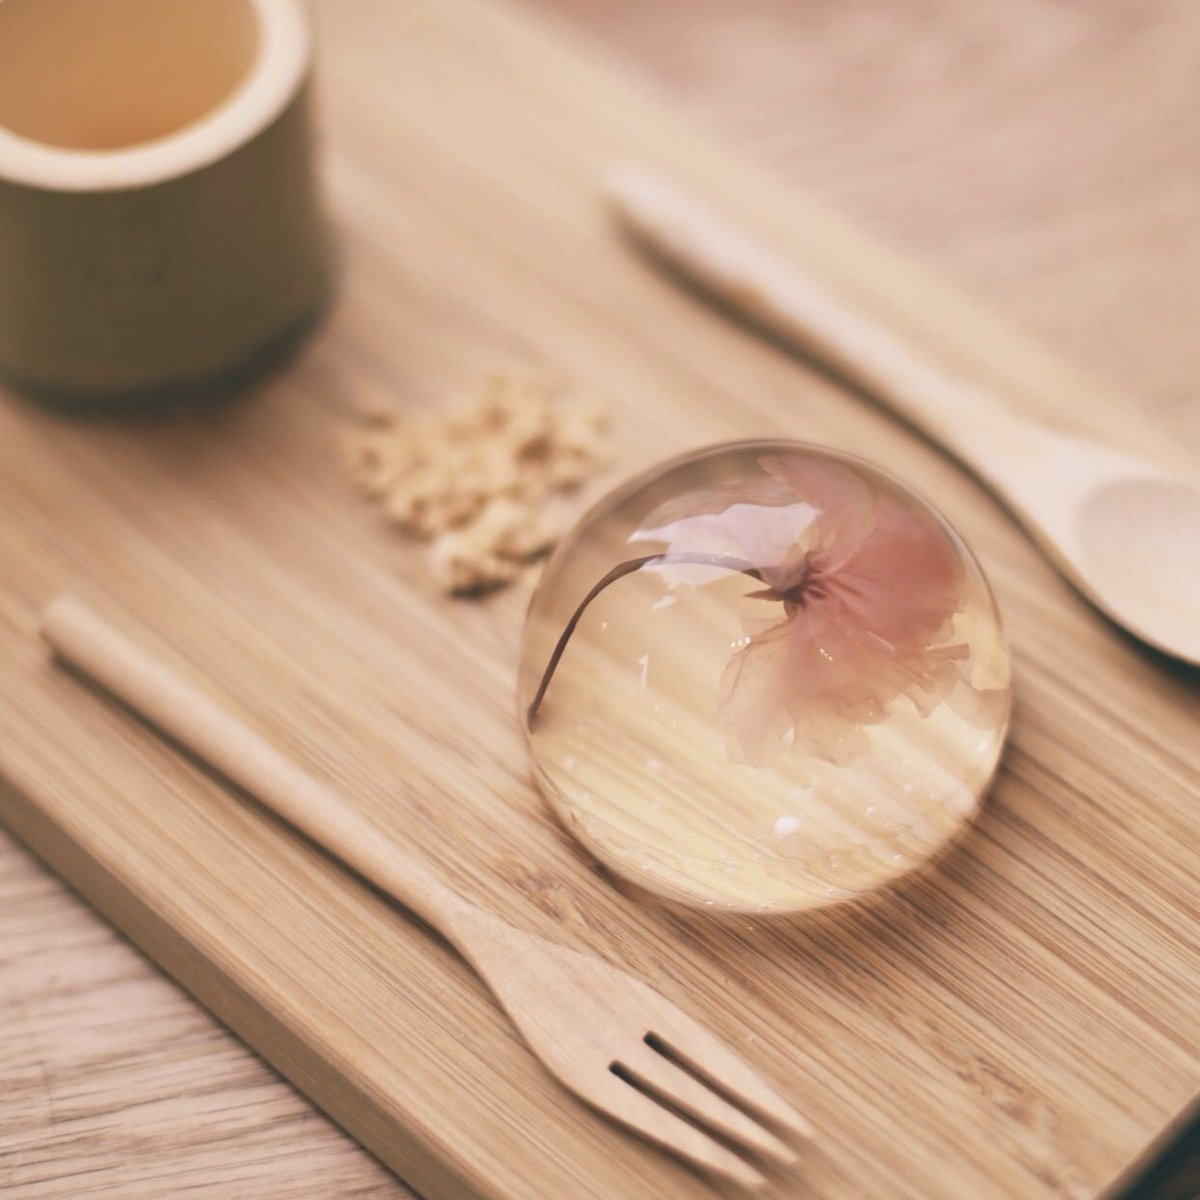 Bánh Mochi giọt nước   Sự sáng tạo ẩn trong văn hóa ẩm thực Nhật Bản